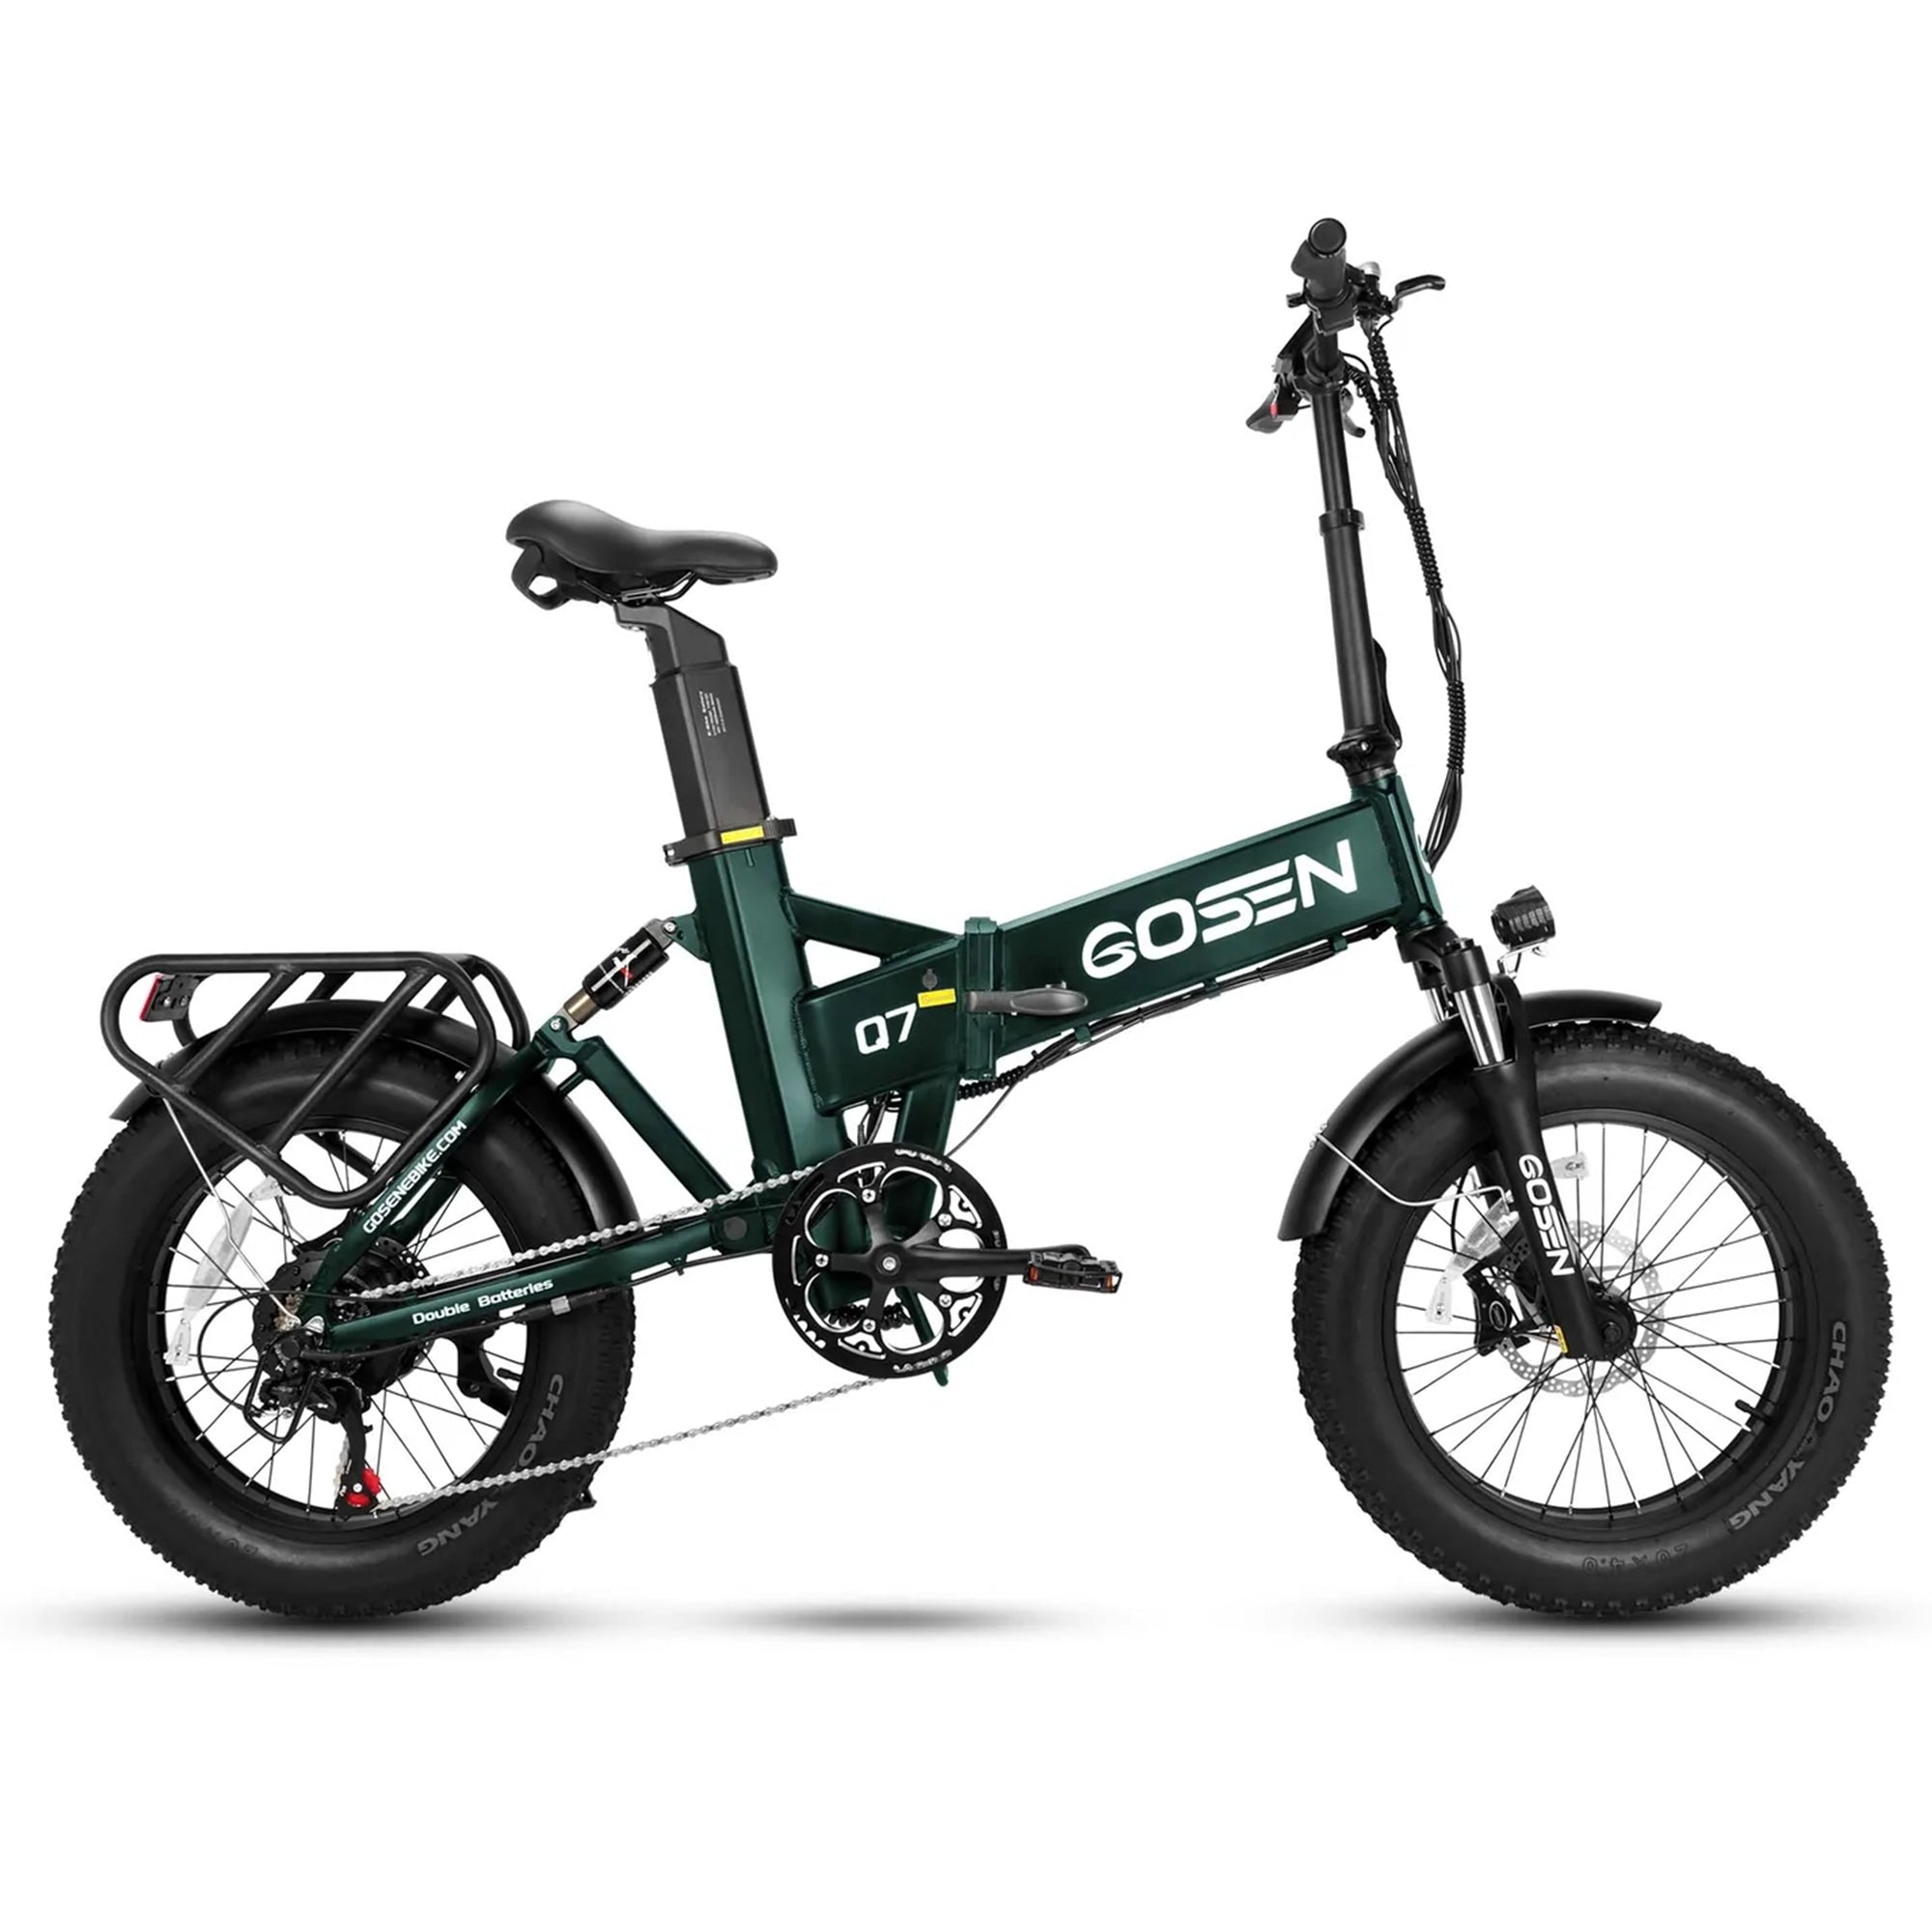 Gosen Q7 E bike